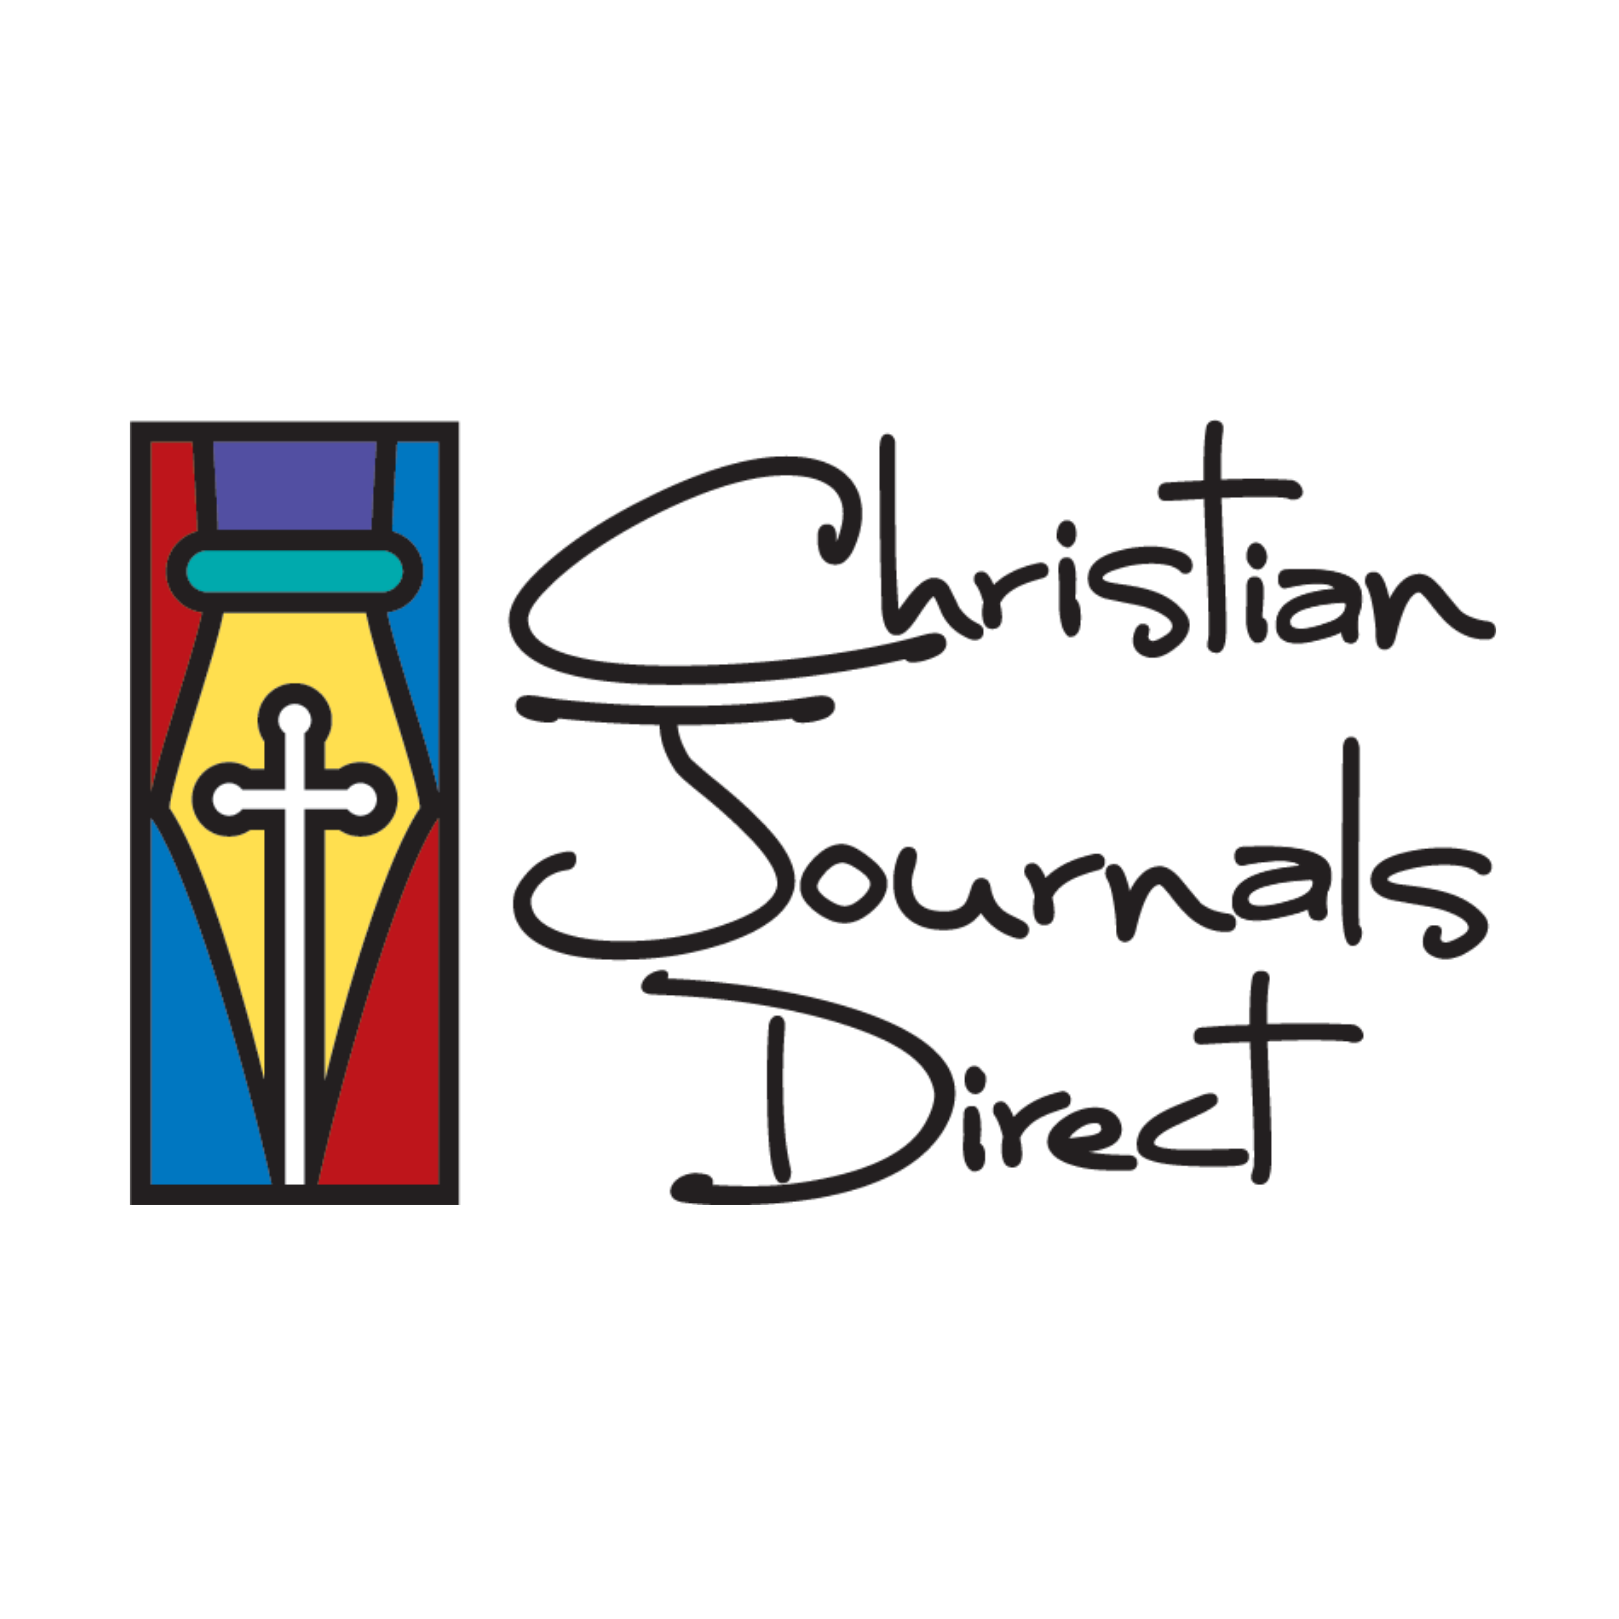 Christian Journals Direct